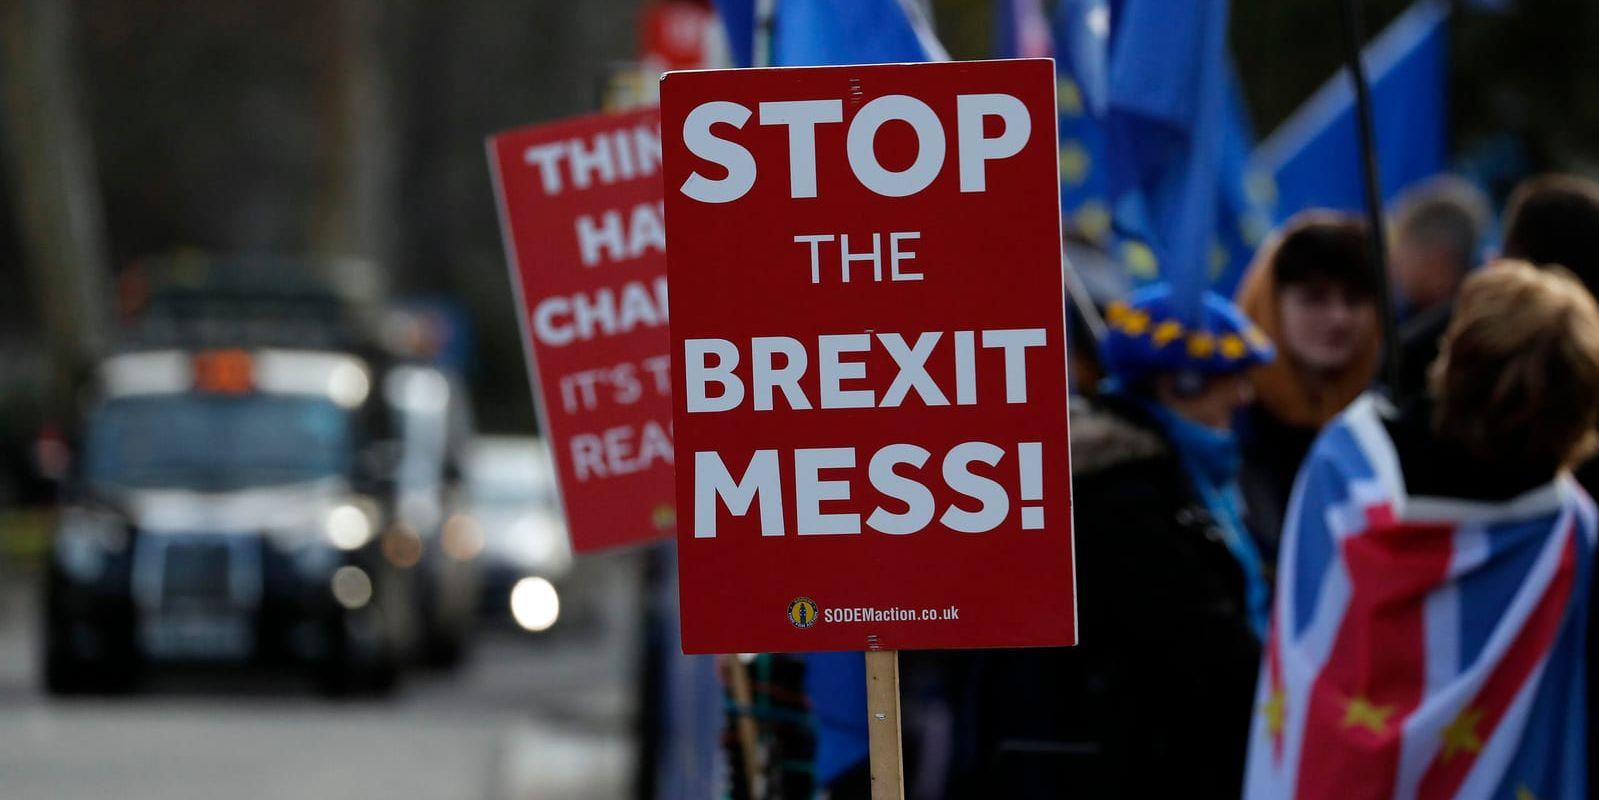 Stoppa brexit-röran, kräver brittiska demonstranter som vill att Storbritannien stannar kvar i EU.